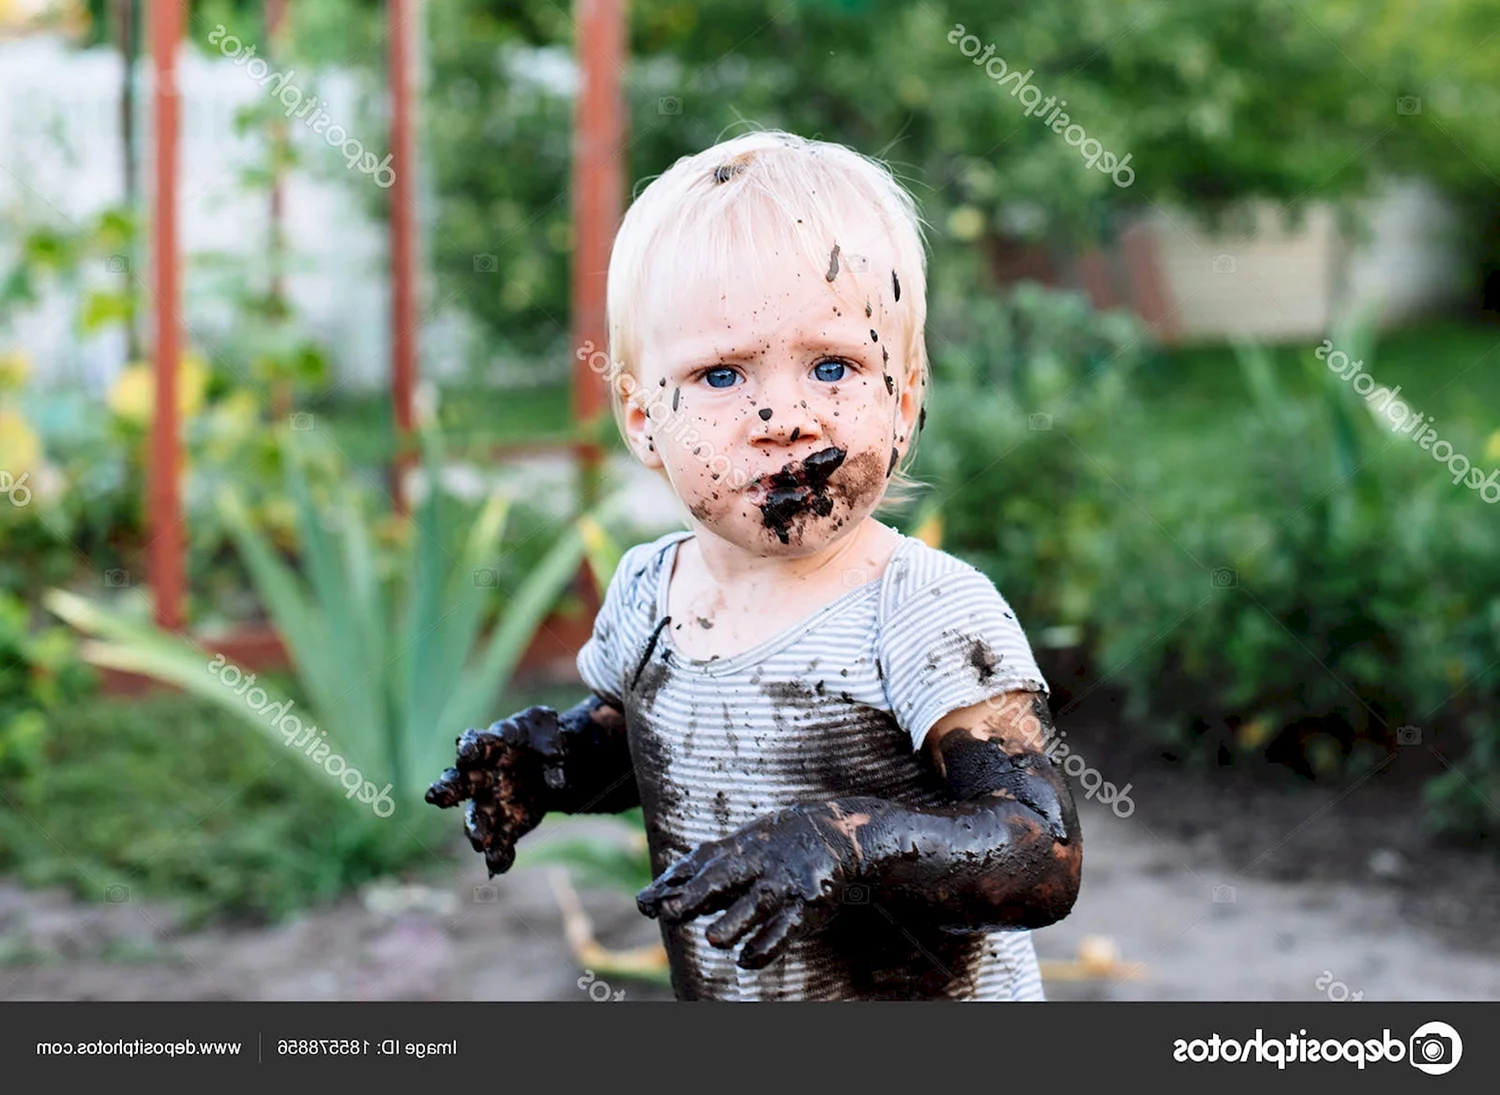 Ребенок испачкался в грязи